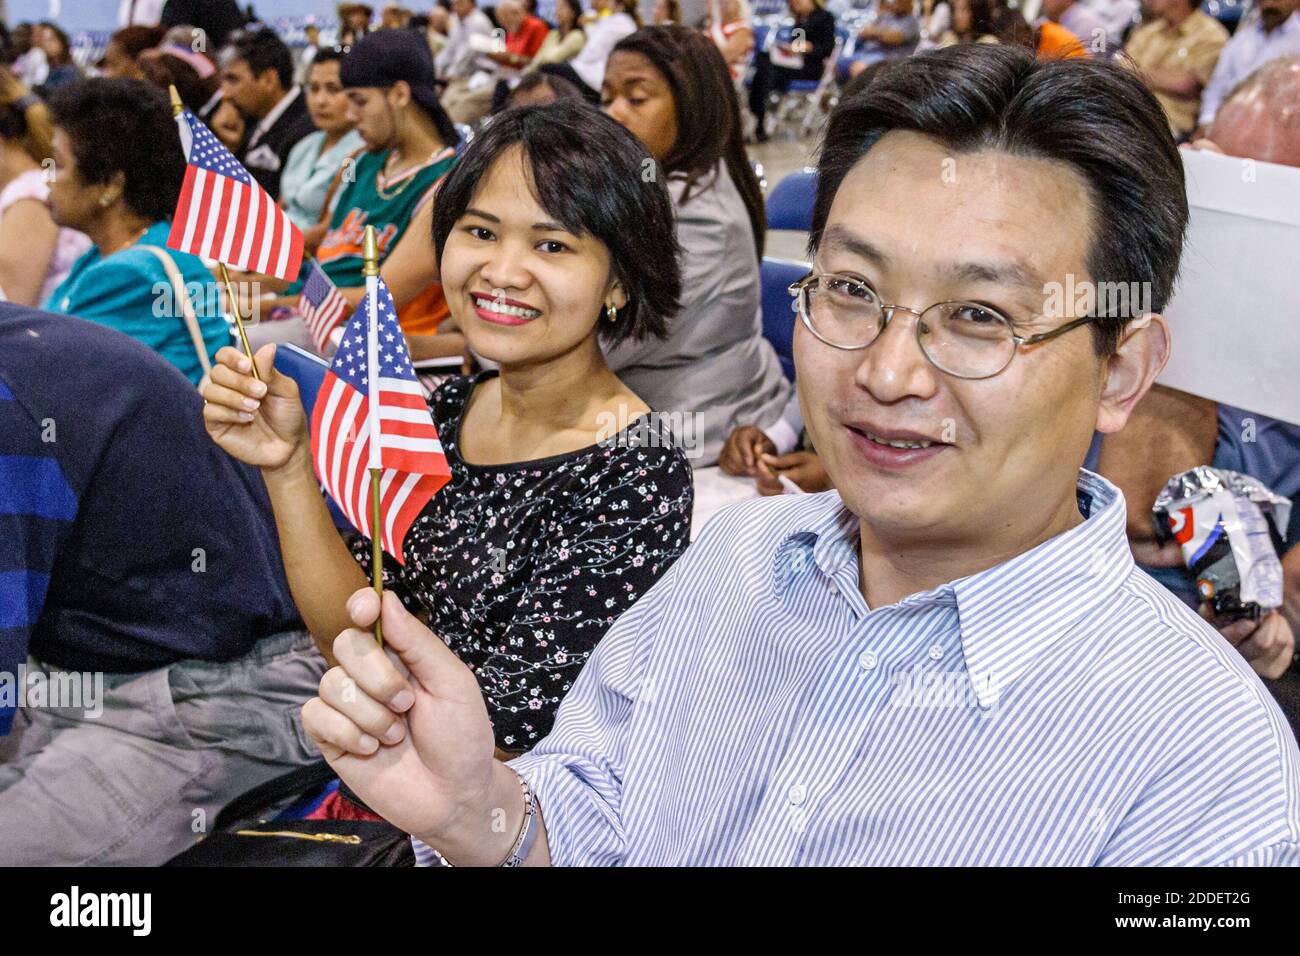 Florida,Miami Beach Convention Center,cerimonia di naturalizzazione,immigrati che detengono bandiera americana in miniatura,uomo asiatico donna maschio femmina sorridente nuovo cittadino Foto Stock